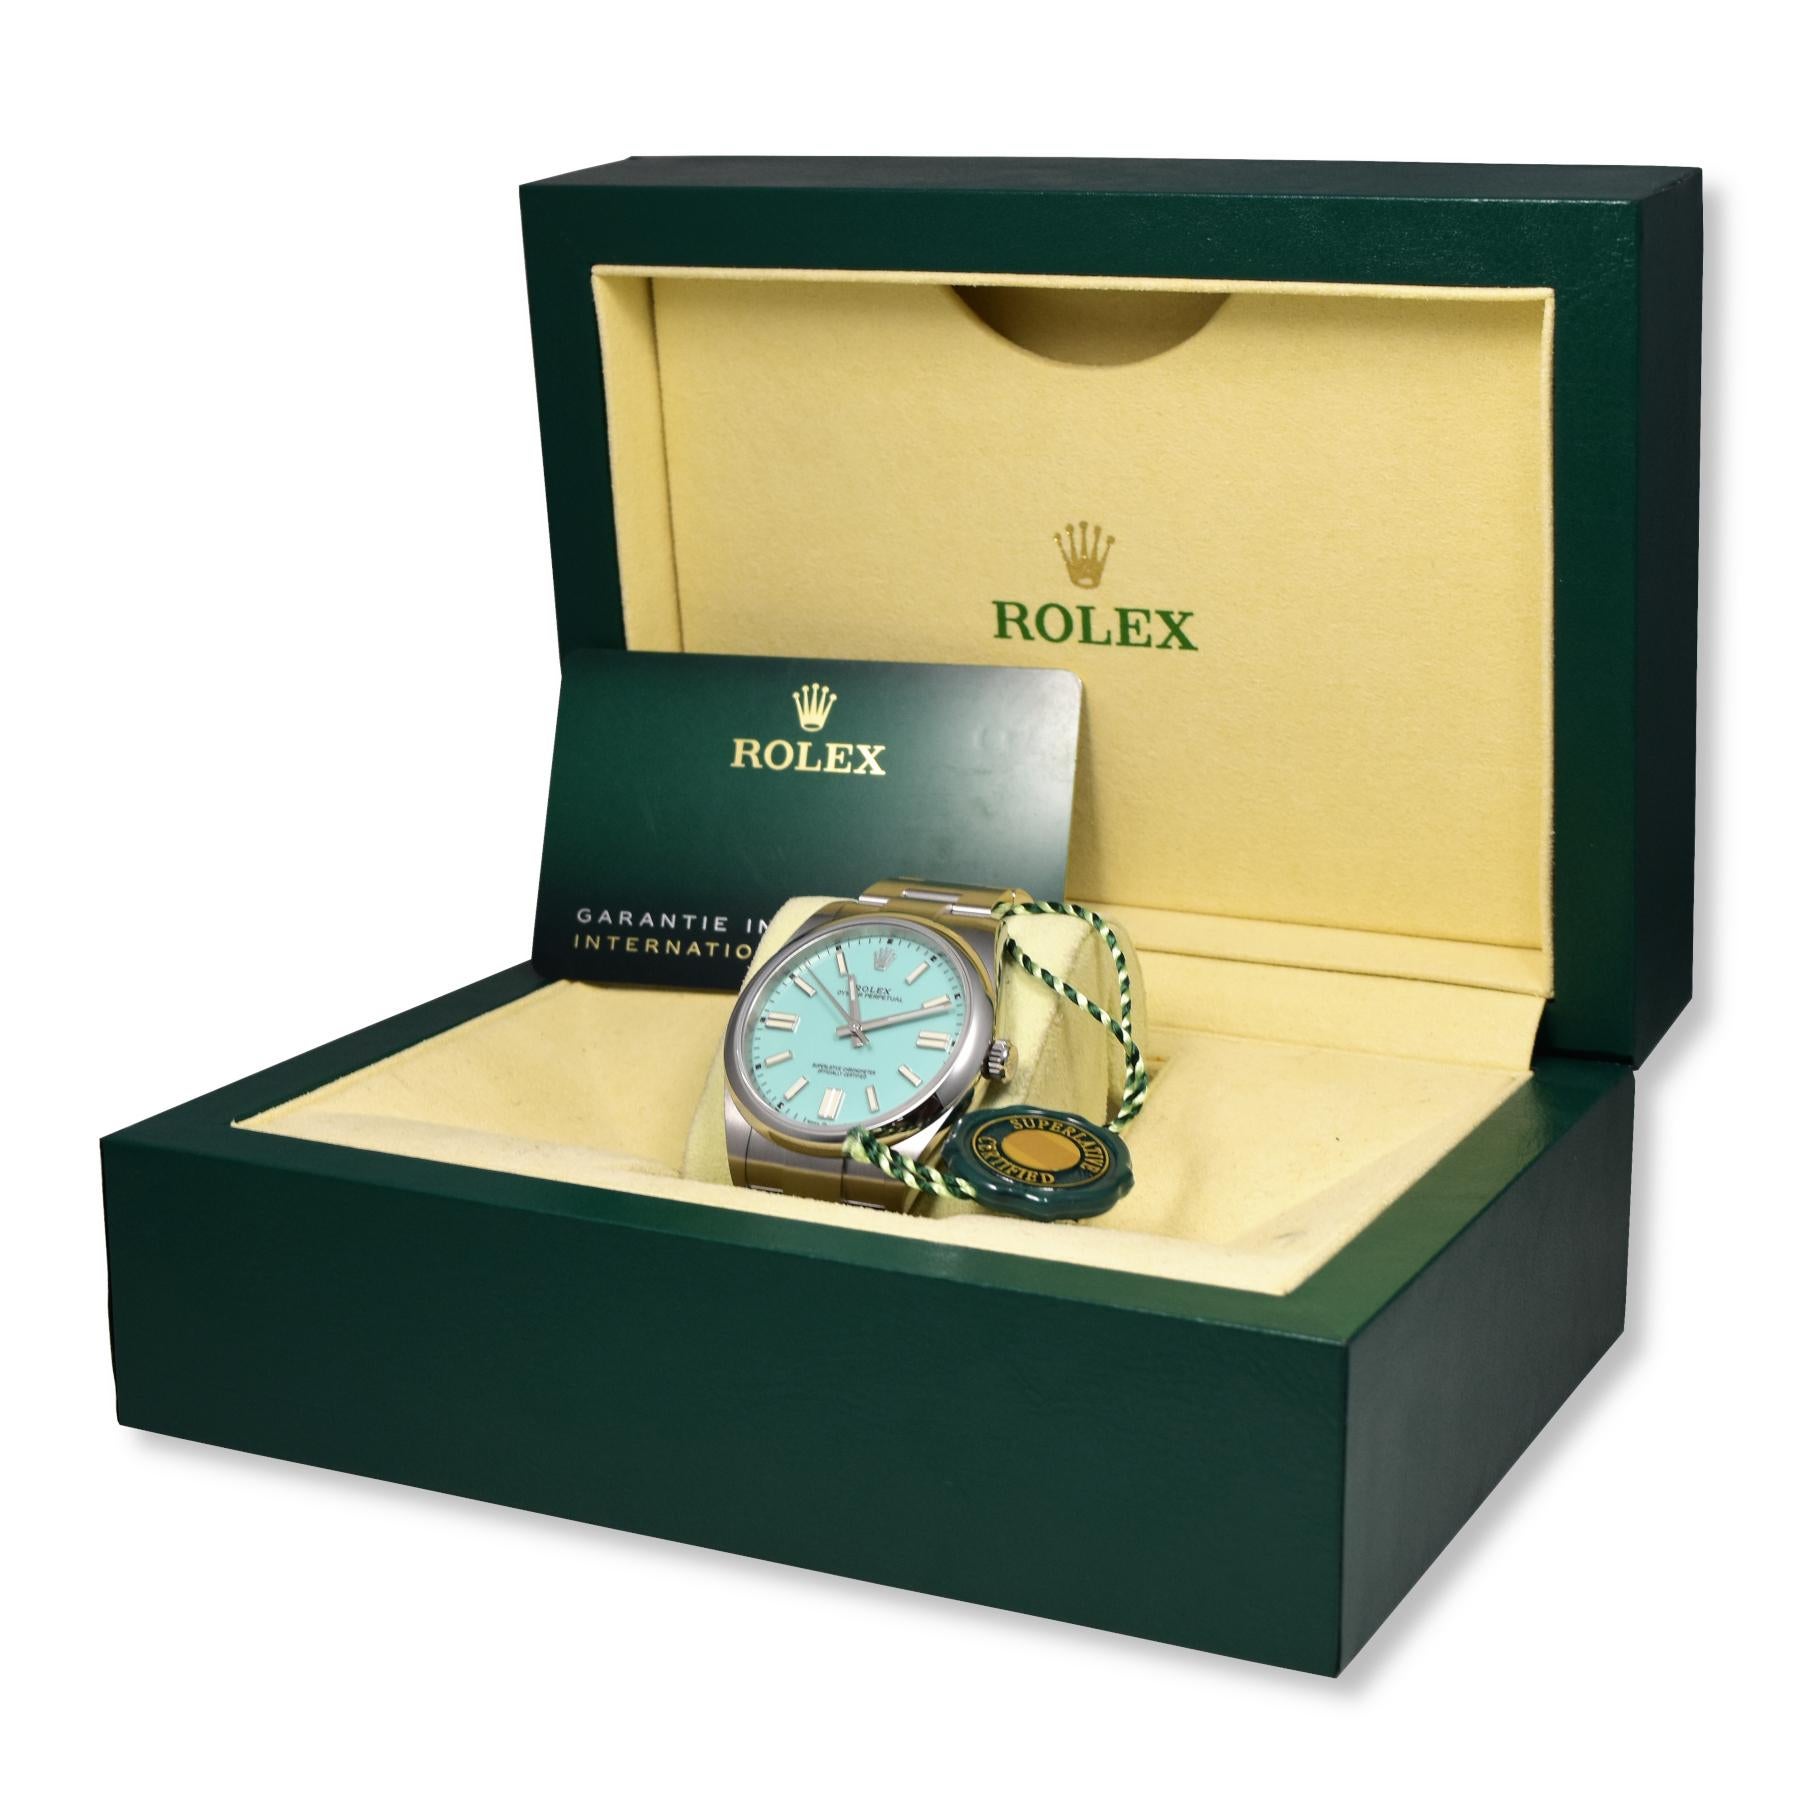 Marque : Rolex

Nom du modèle : Oyster Perpetual
Numéro de modèle : 124300 

Année : 2020

Taille de l'affaire :  41 mm

Cadran : Bleu Tiffany

Lunette : lisse

Marqueurs d'heure : Bâton

Bracelet : Bracelet Oyster

Comprend : Brilliance Jewels